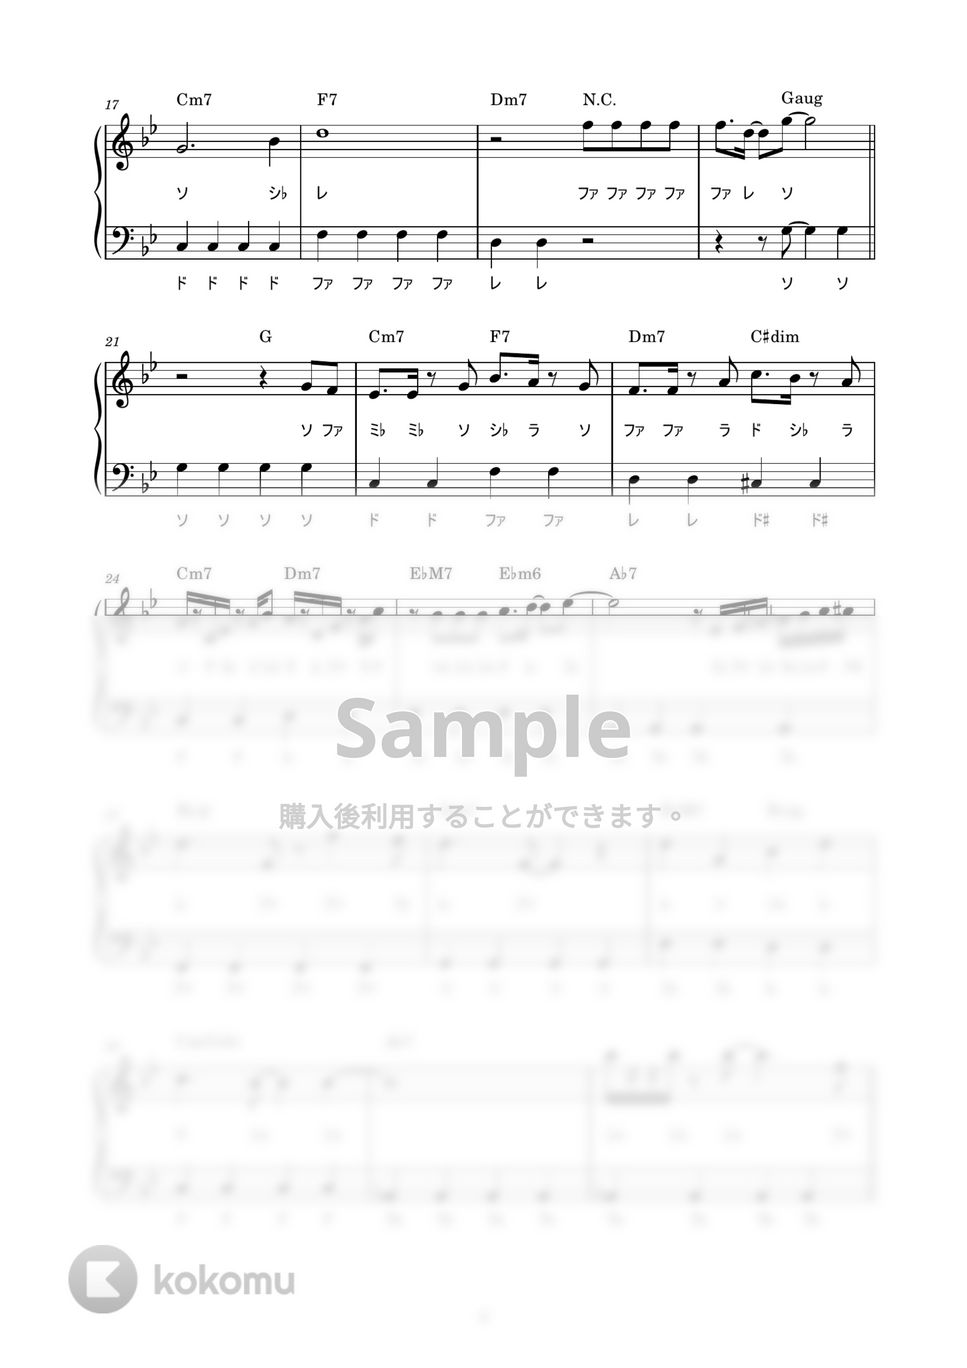 松平健 - マツケンサンバⅡ (かんたん / 歌詞付き / ドレミ付き / 初心者) by piano.tokyo